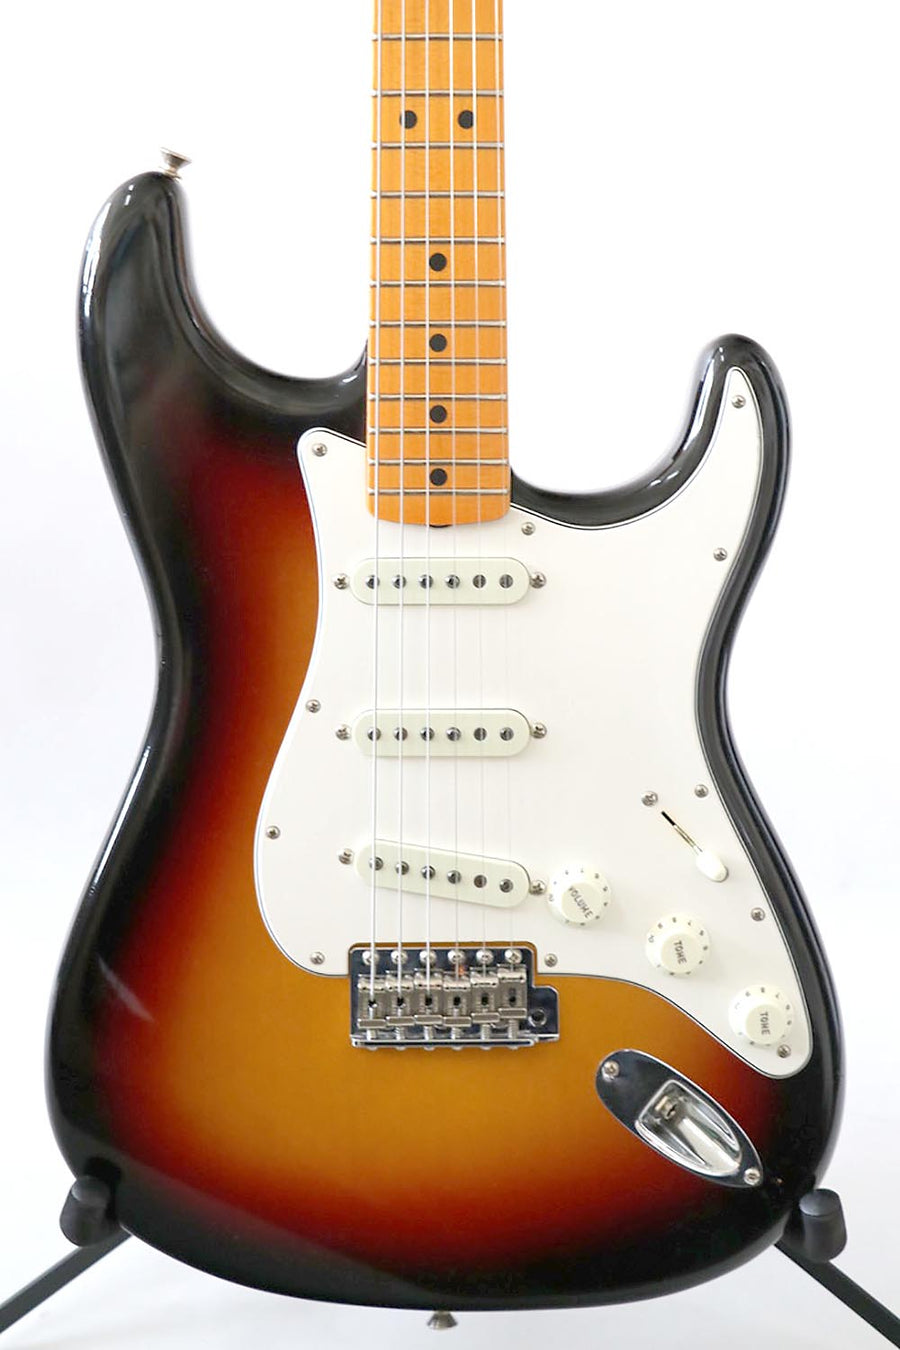 Fender Stratocaster 1969 Custom Shop Closet Classic